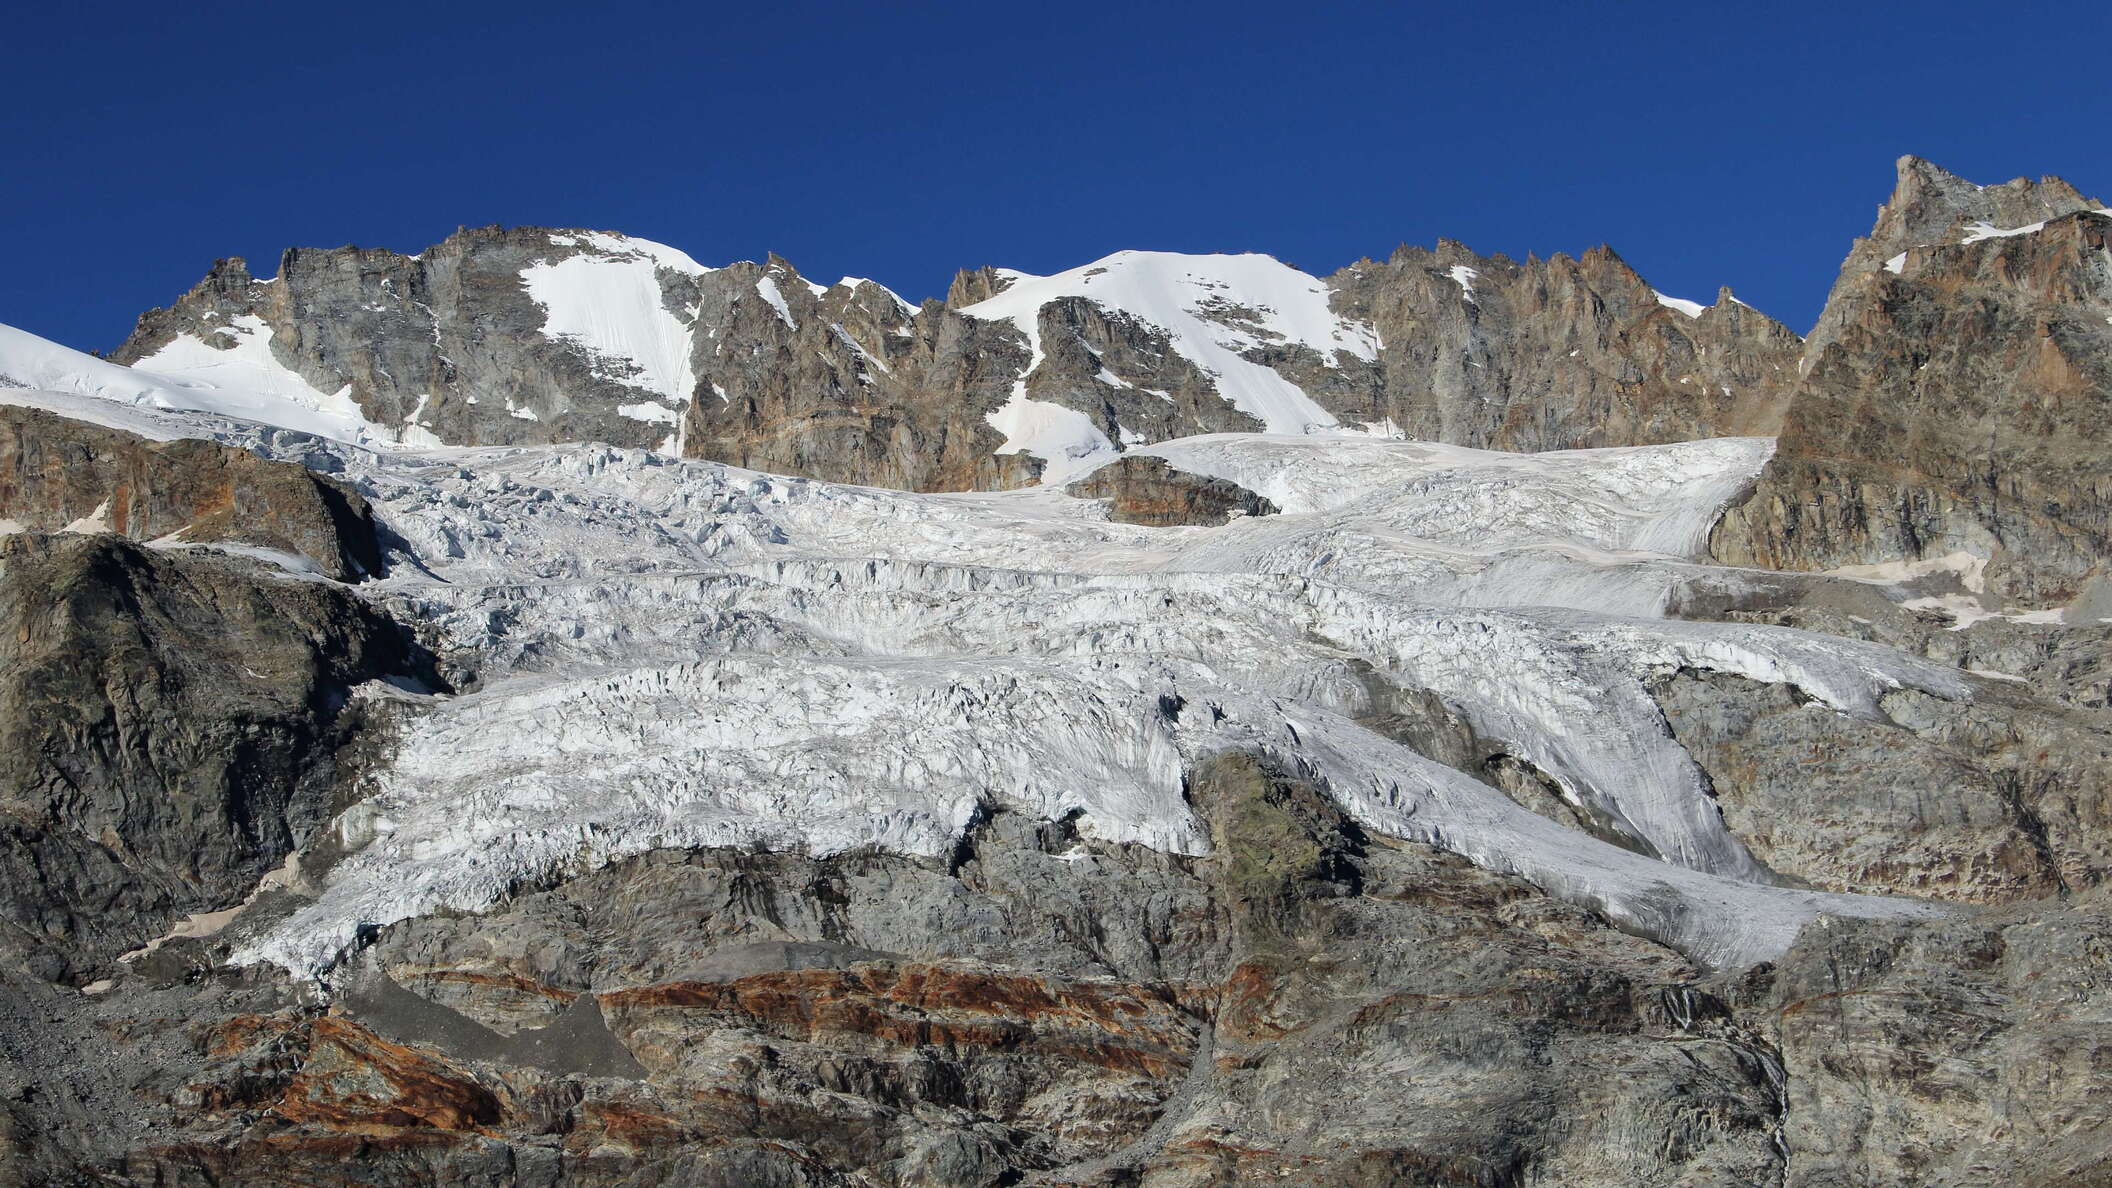 Tribolazione Glacier with Gran Paradiso and Punta Frassy